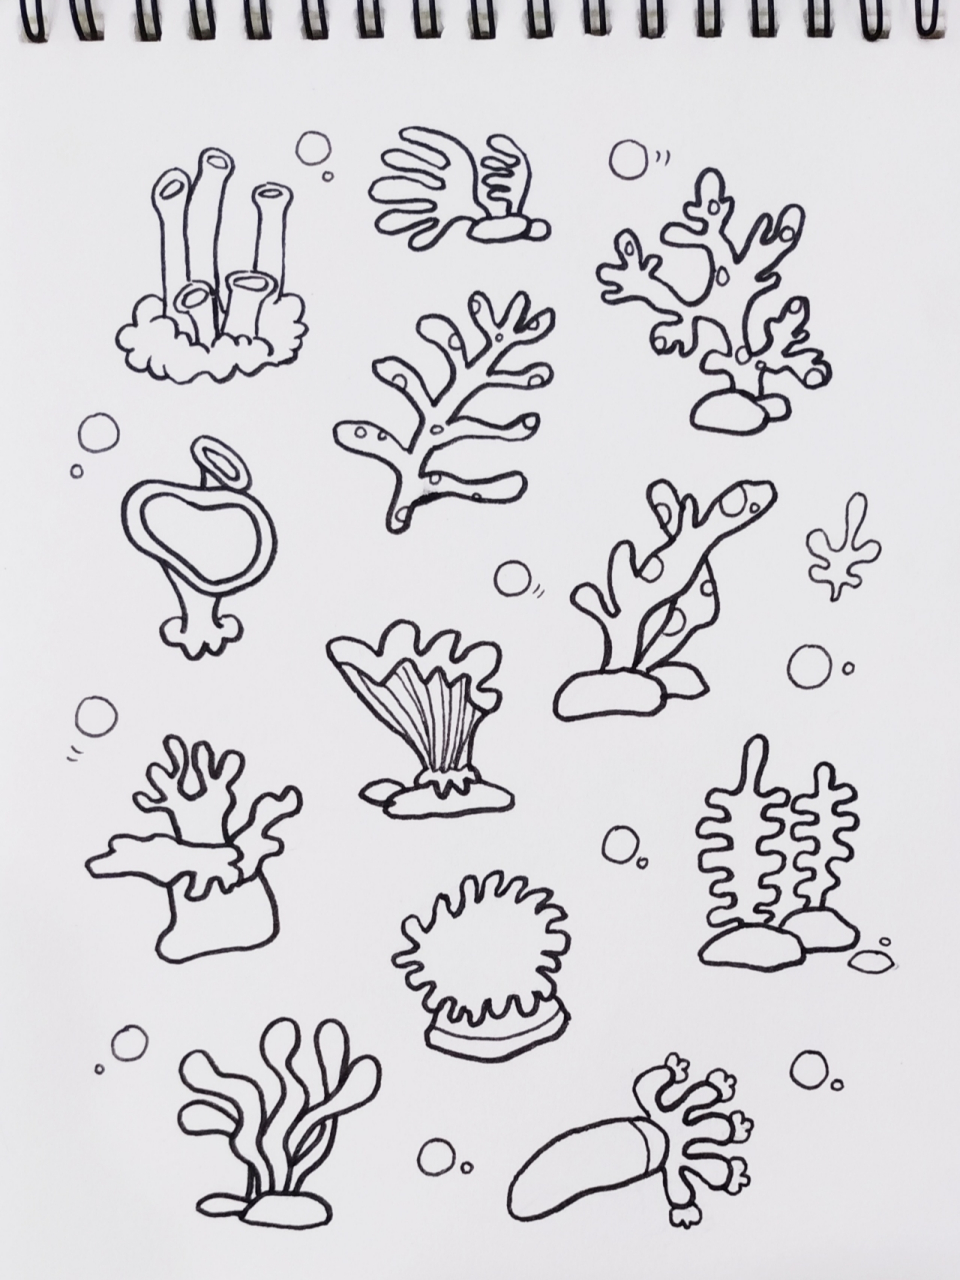 海底珊瑚简笔画简单图片